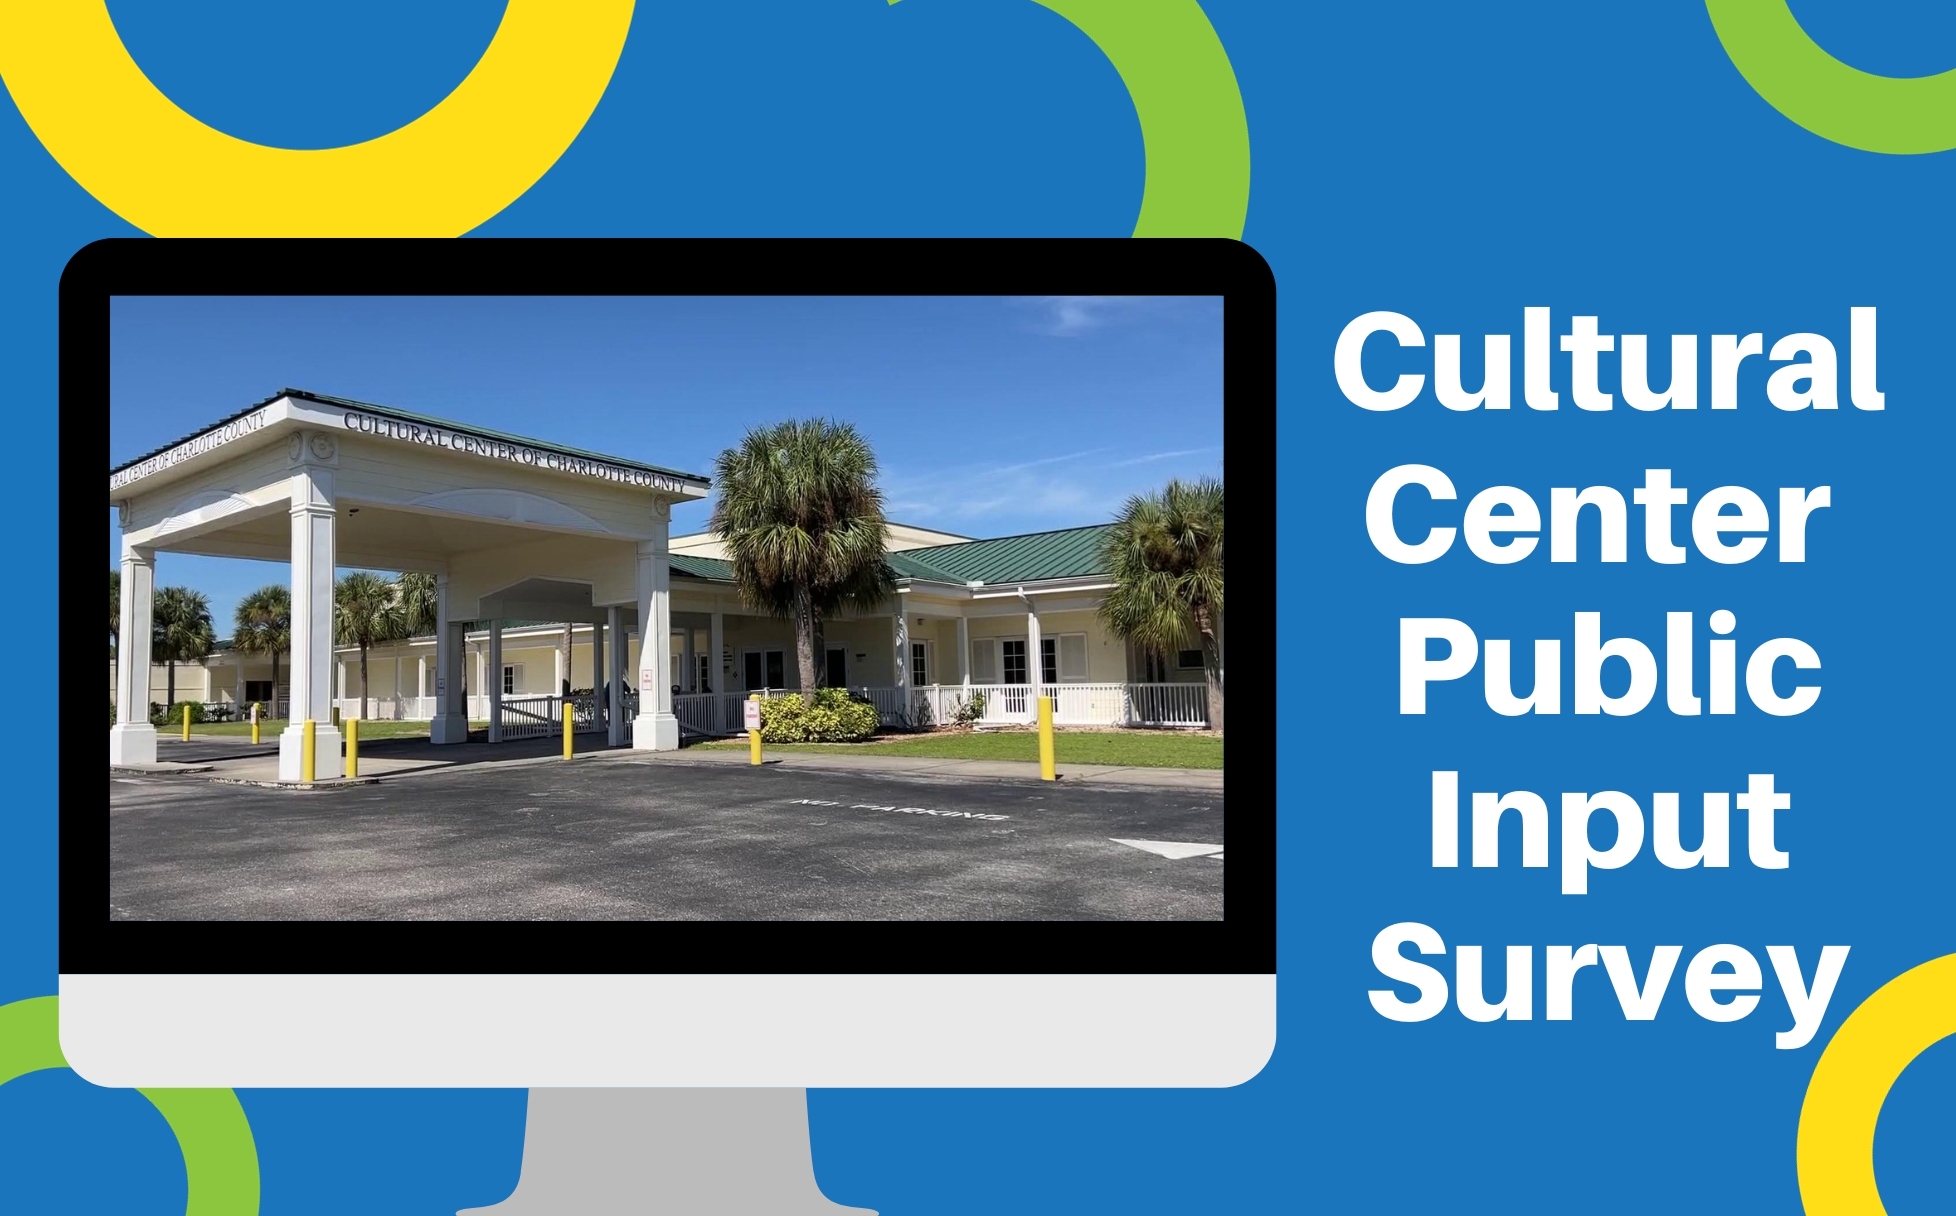 Cultural Center Public Input Survey